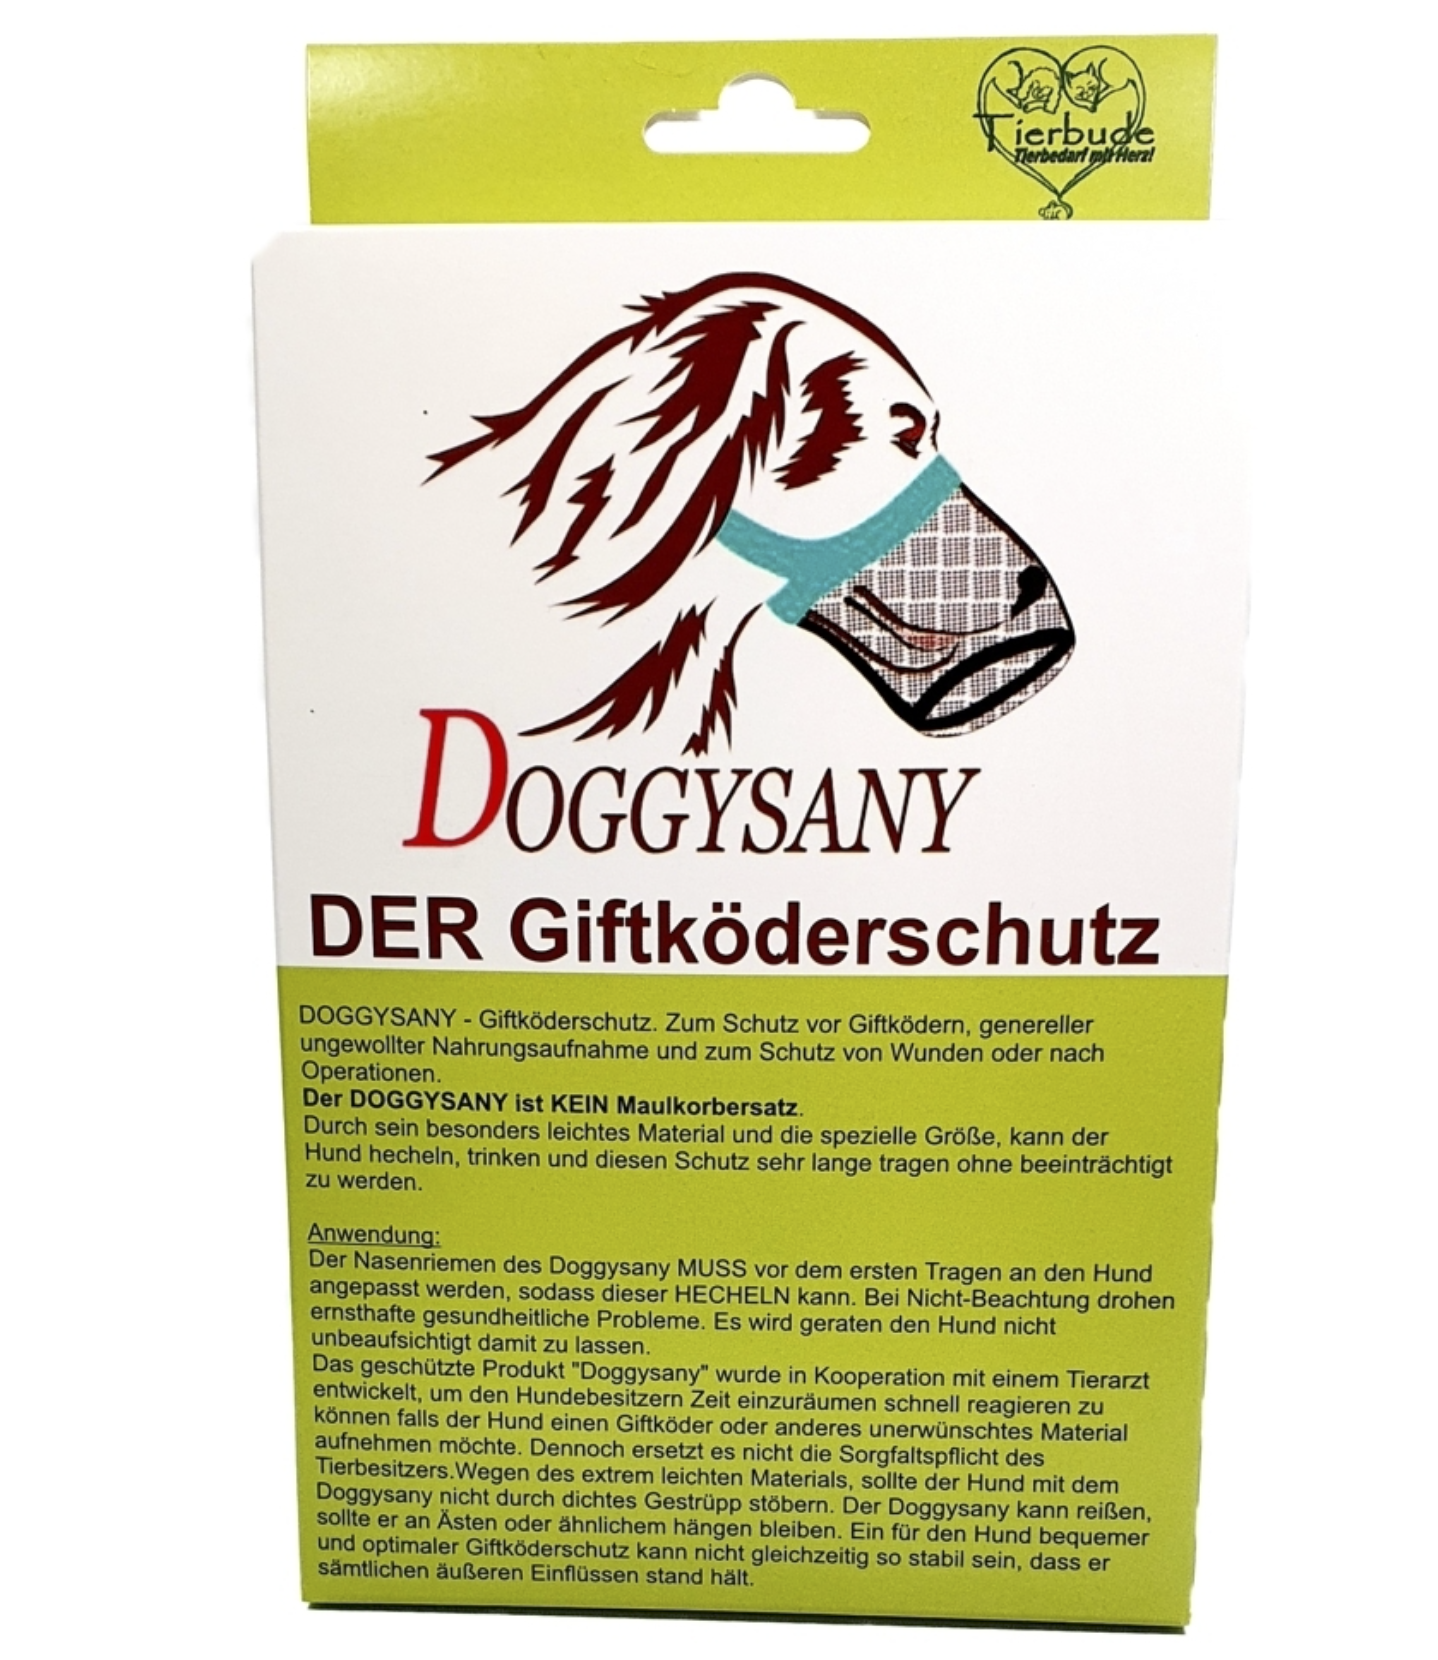 Doggysany - Der Giftköderschutz